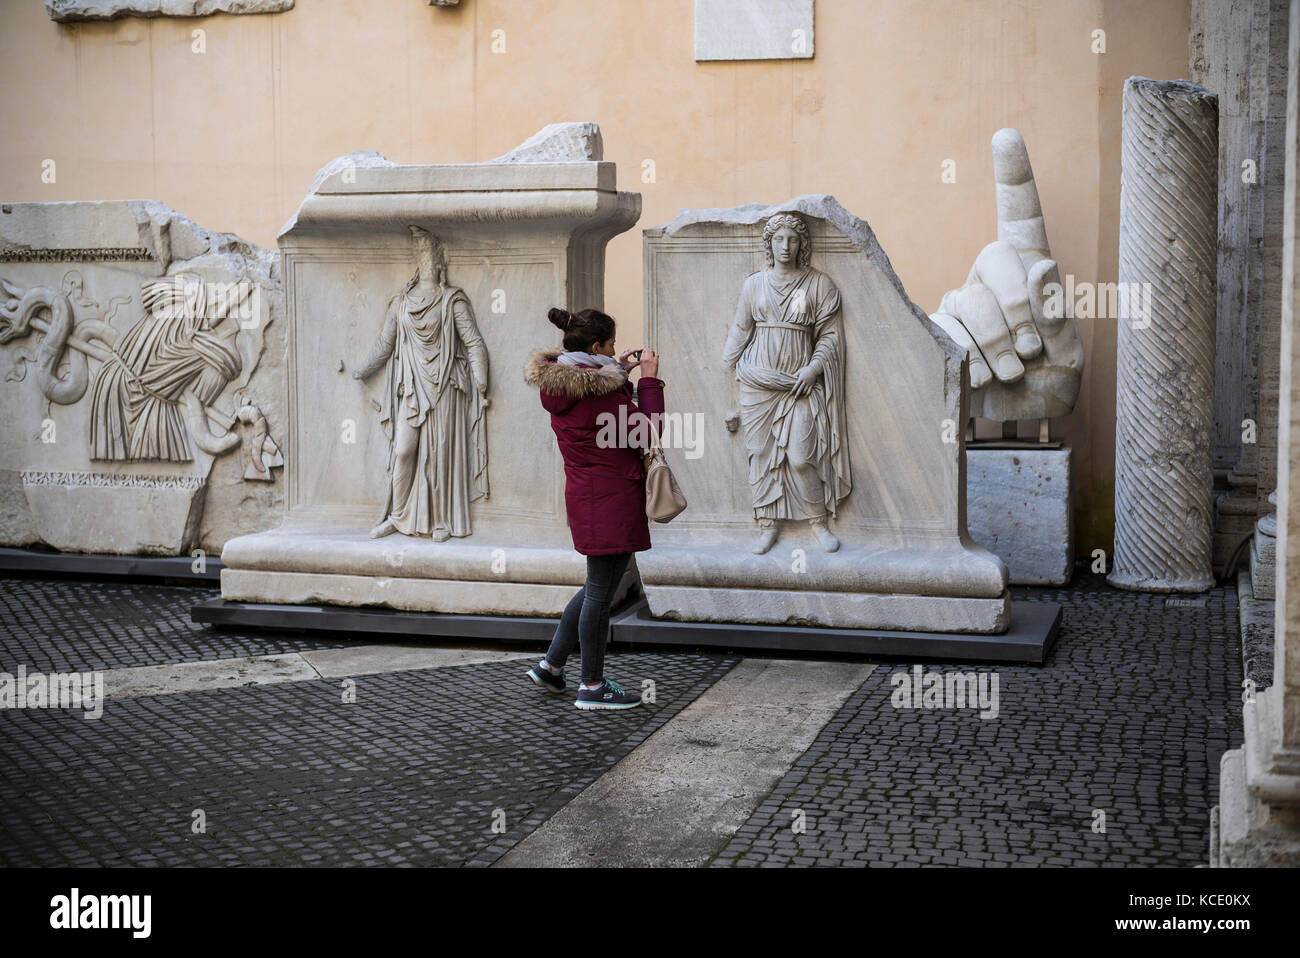 Roma. L'Italia. Visitatore guardando i rilievi del Tempio di Adriano nel cortile del Palazzo dei Conservatori, Musei Capitolini. Foto Stock